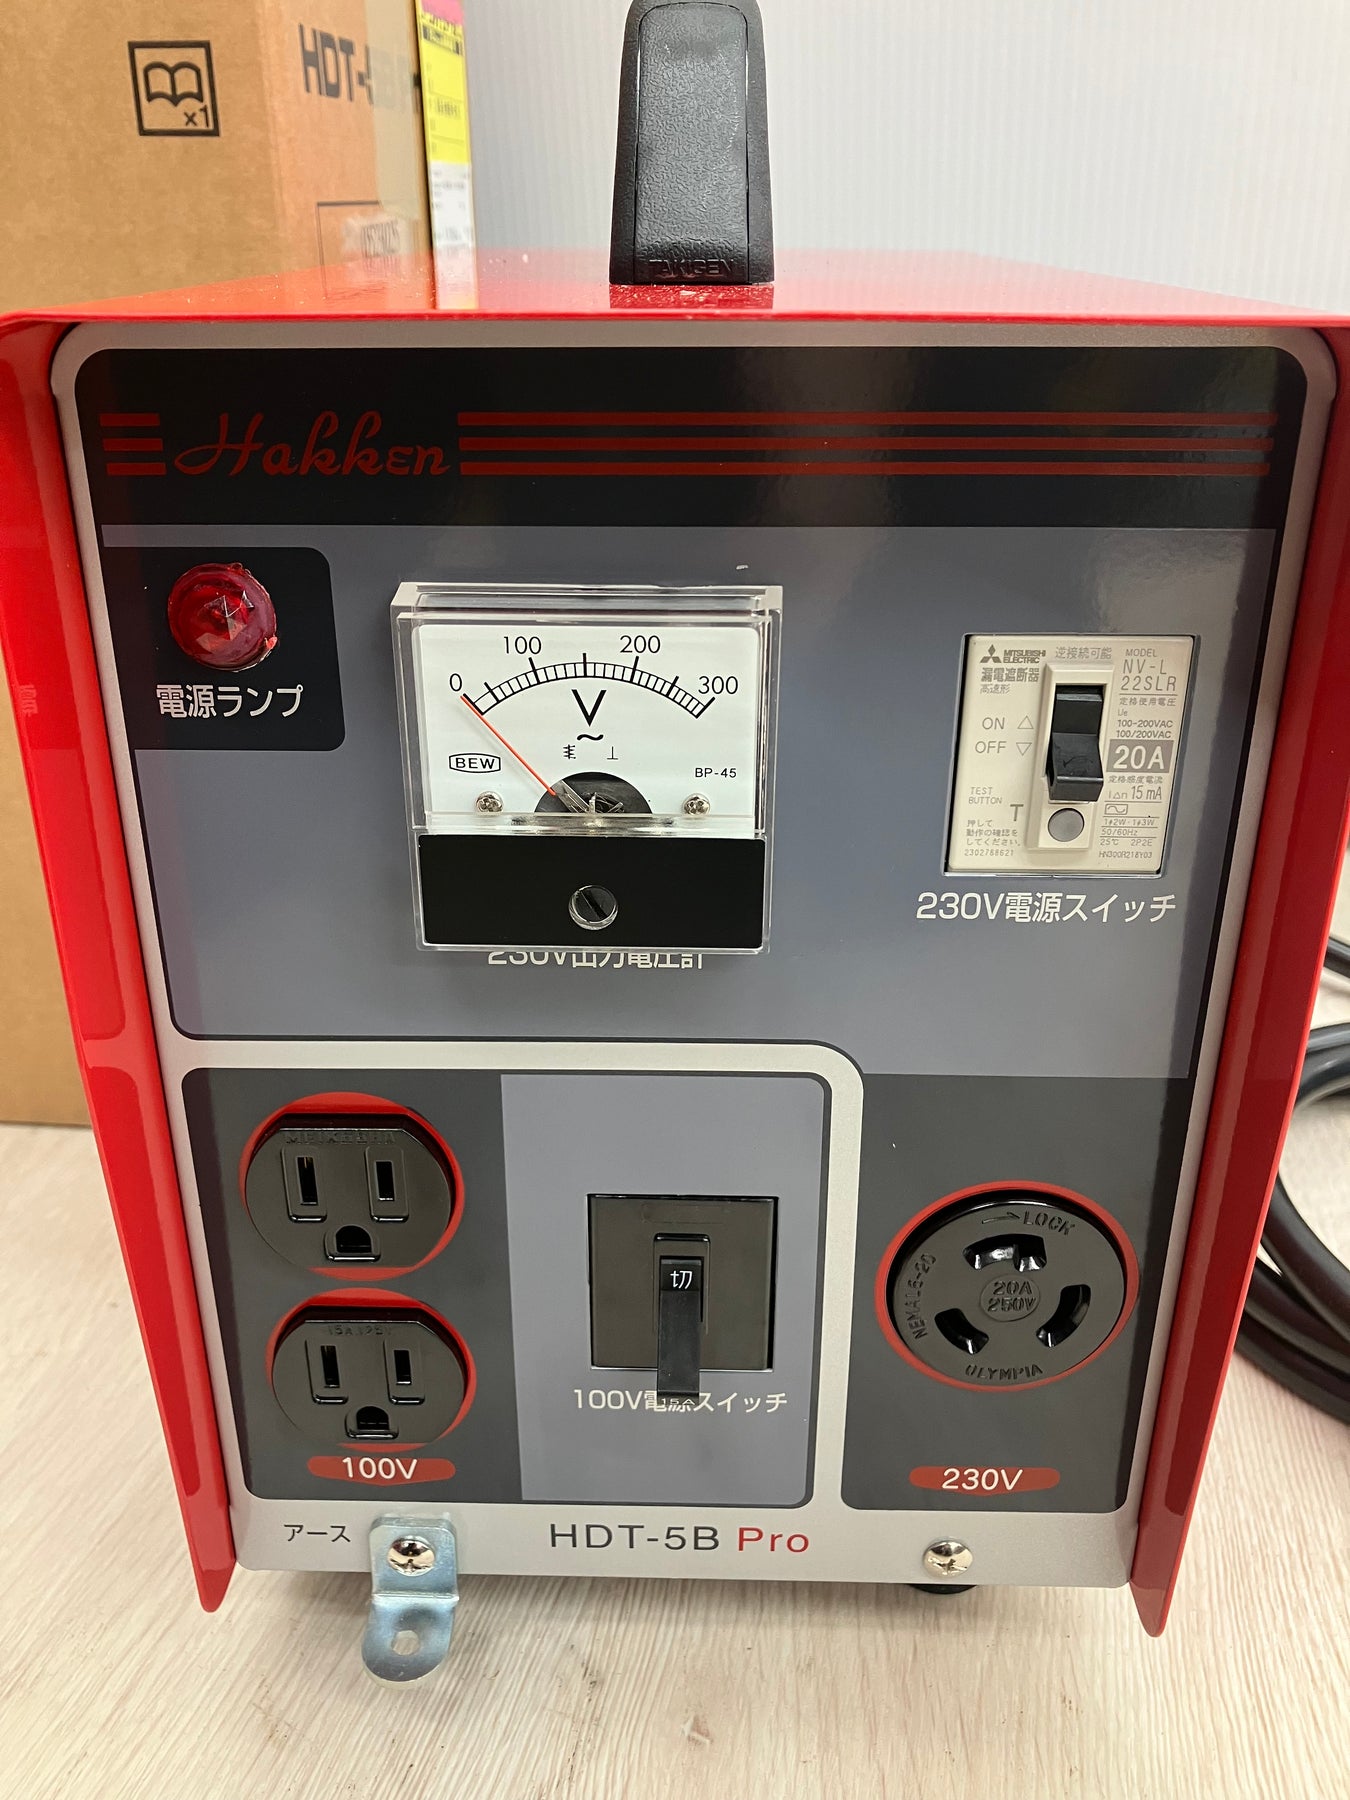 ○Hakken/コンセック 変圧器 ハードトランス(昇圧用) HDT-5B Pro【川越 